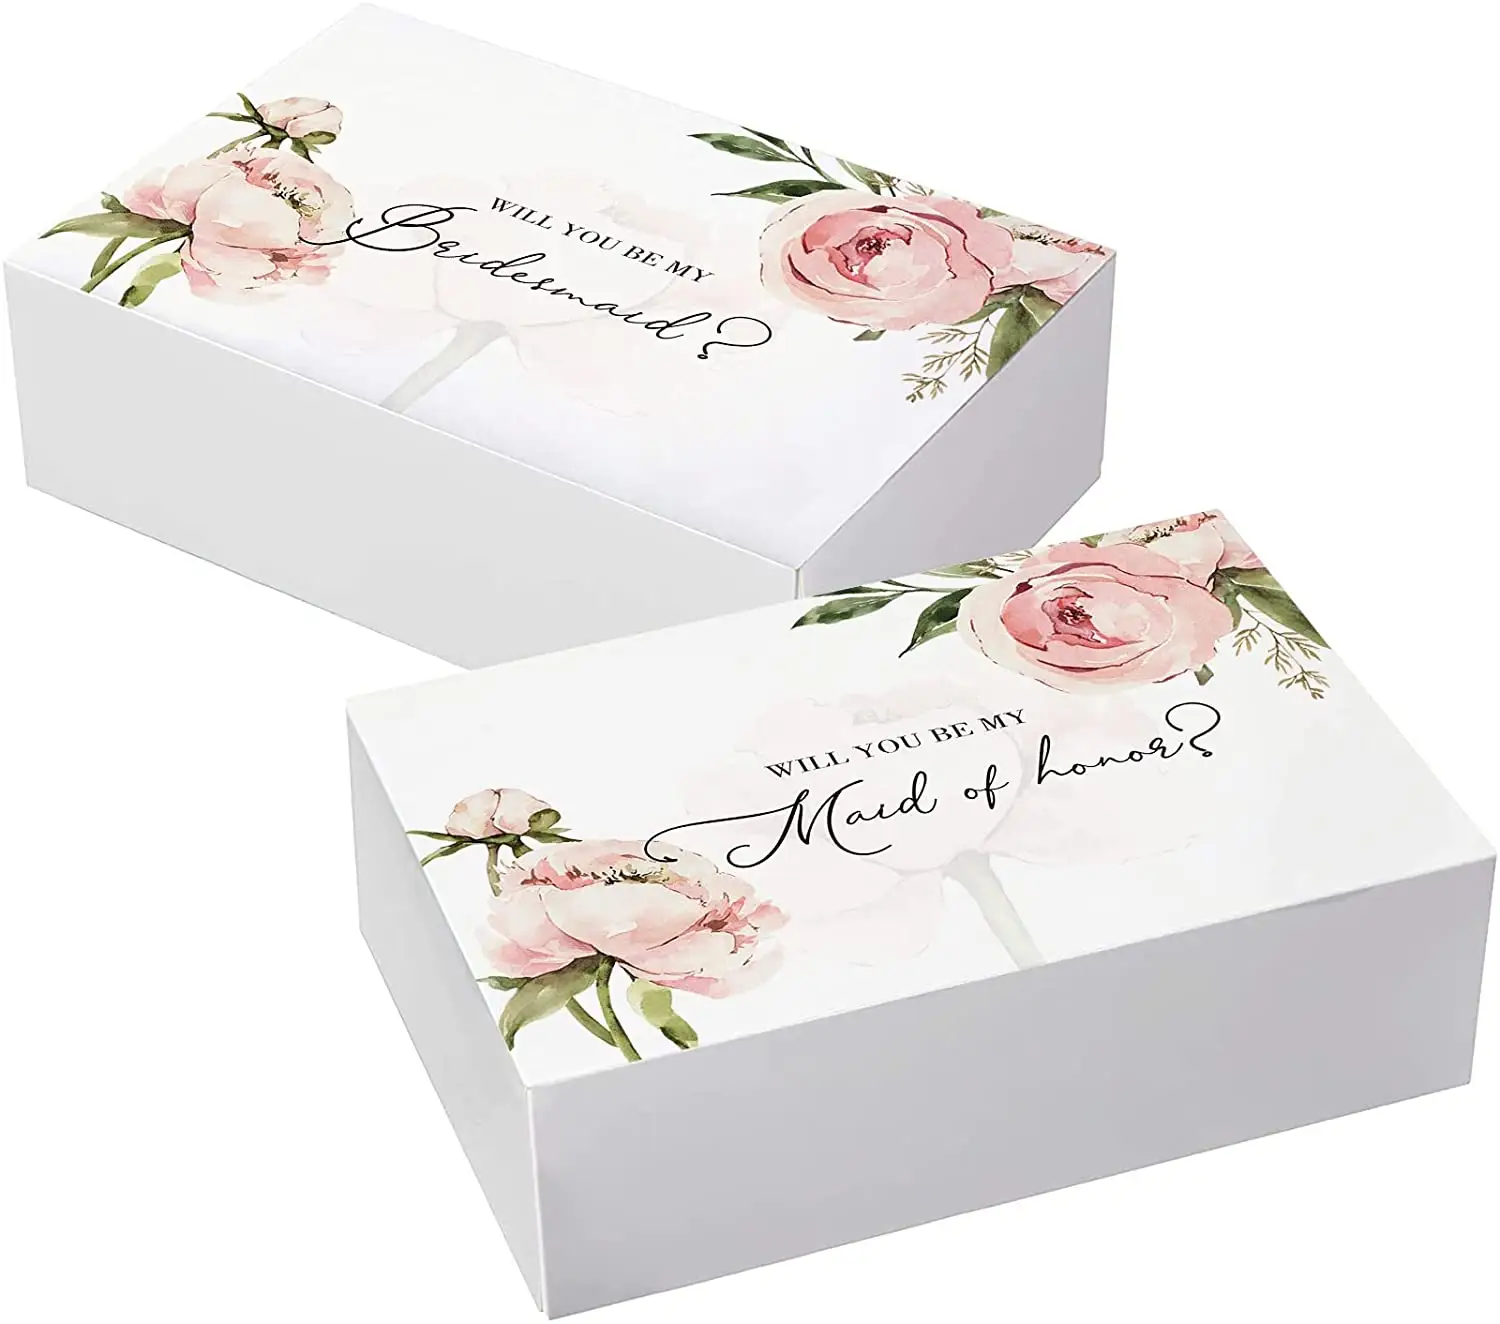 6er Pack Brautjungfer Hochzeits geschenke Boxen für Gäste Werden Sie meine Brautjungfer Blumen box für Brautjungfer Geschenke Hochzeits dekoration sein